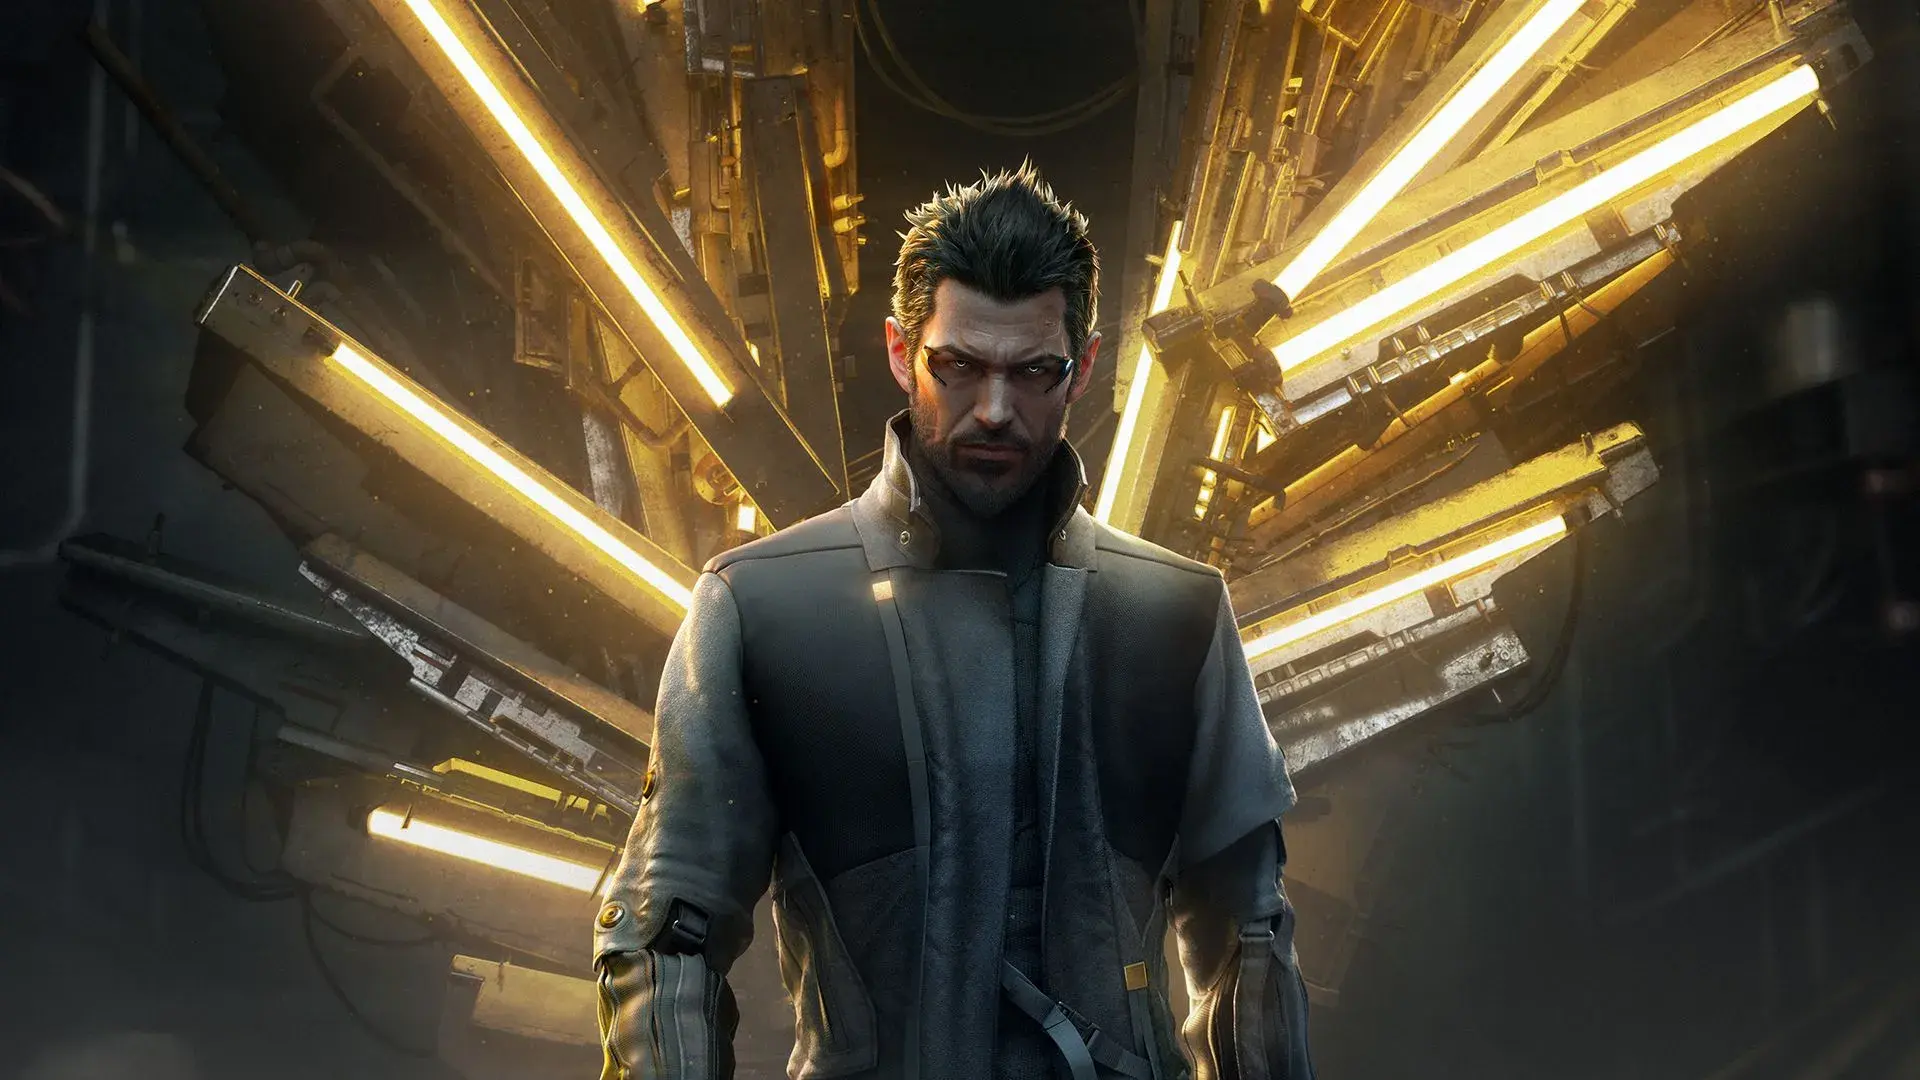 Deus Ex Mankind Divided feature image.